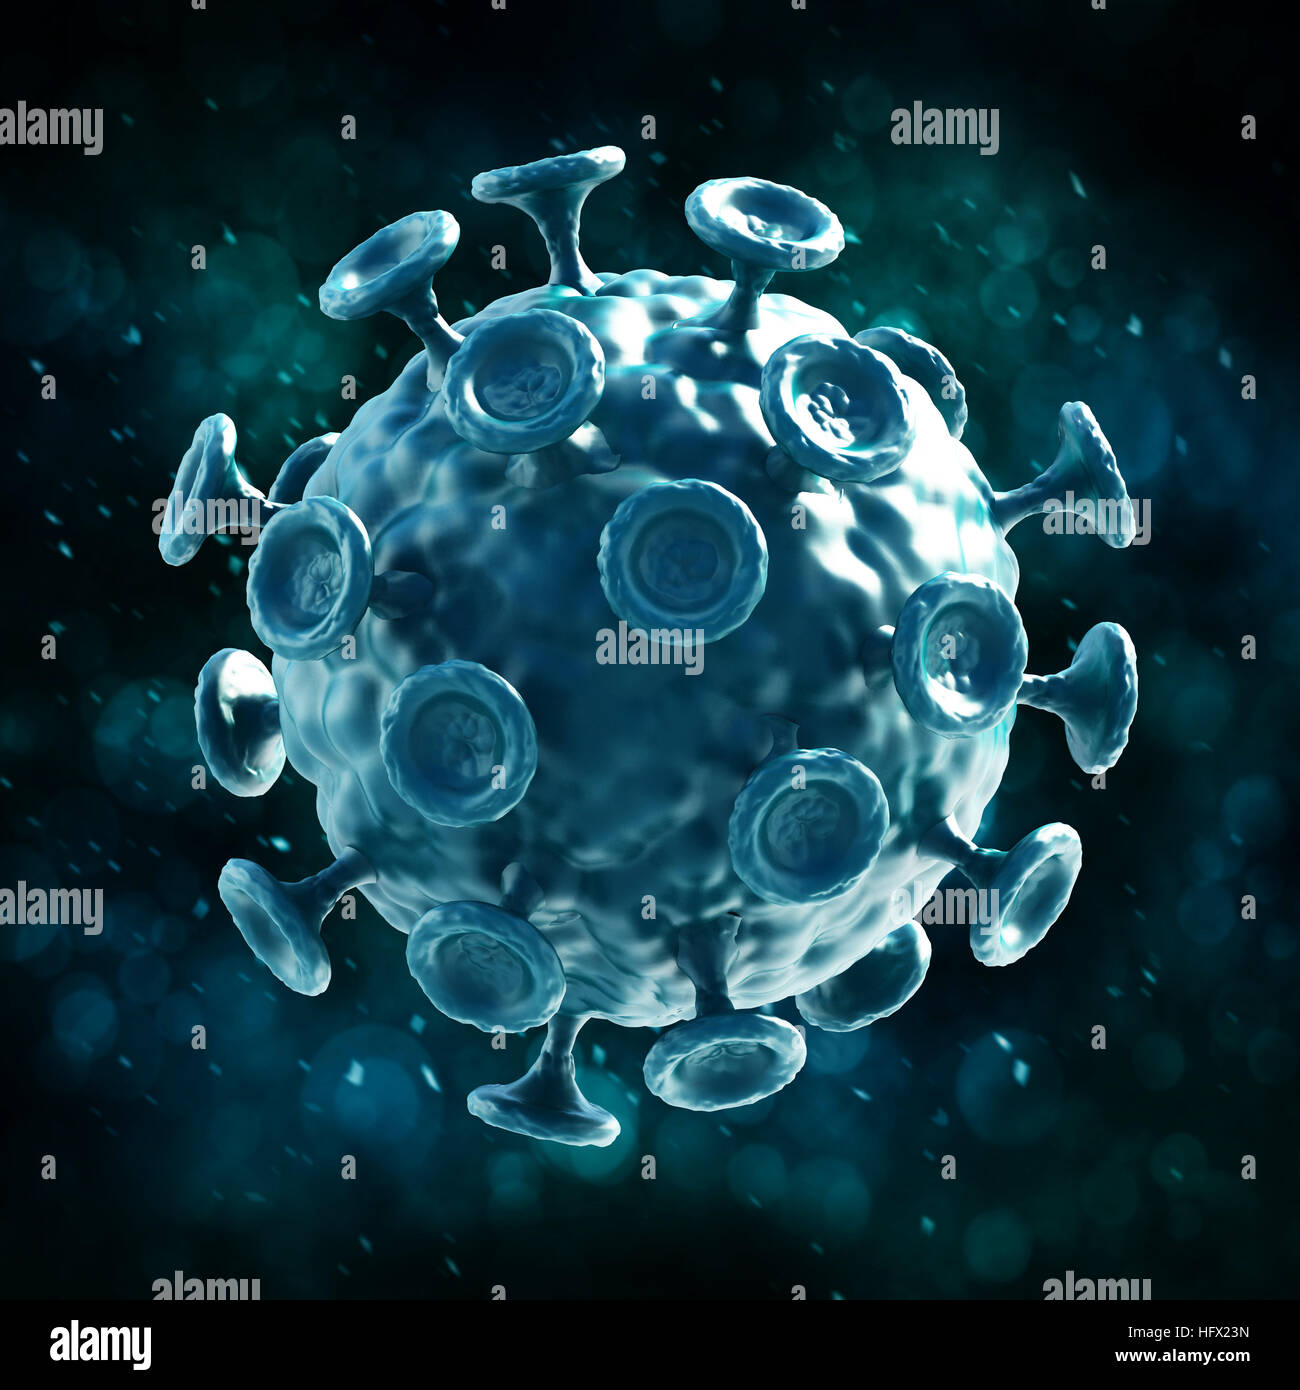 Green virus isolated on dark background. 3D illustration. Stock Photo